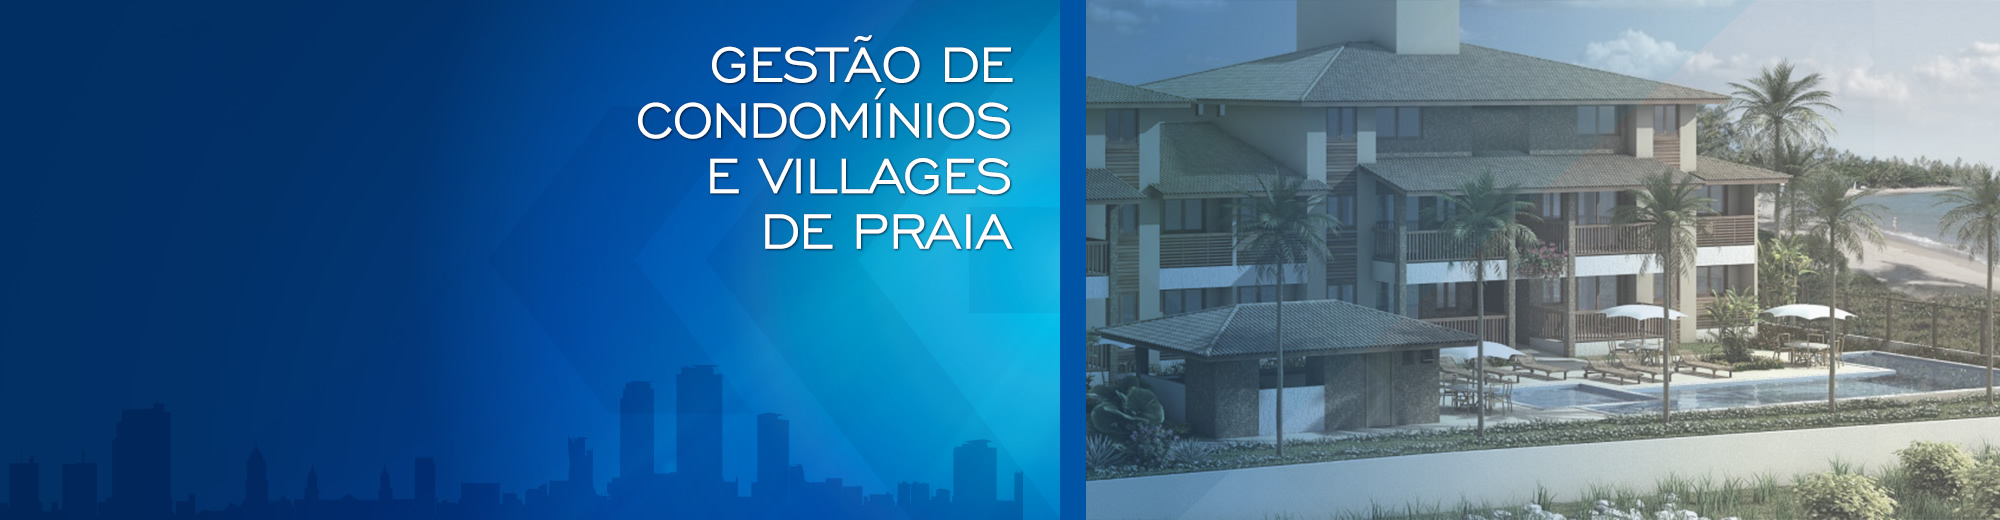 Gestão de condomínios e Villages de Praia